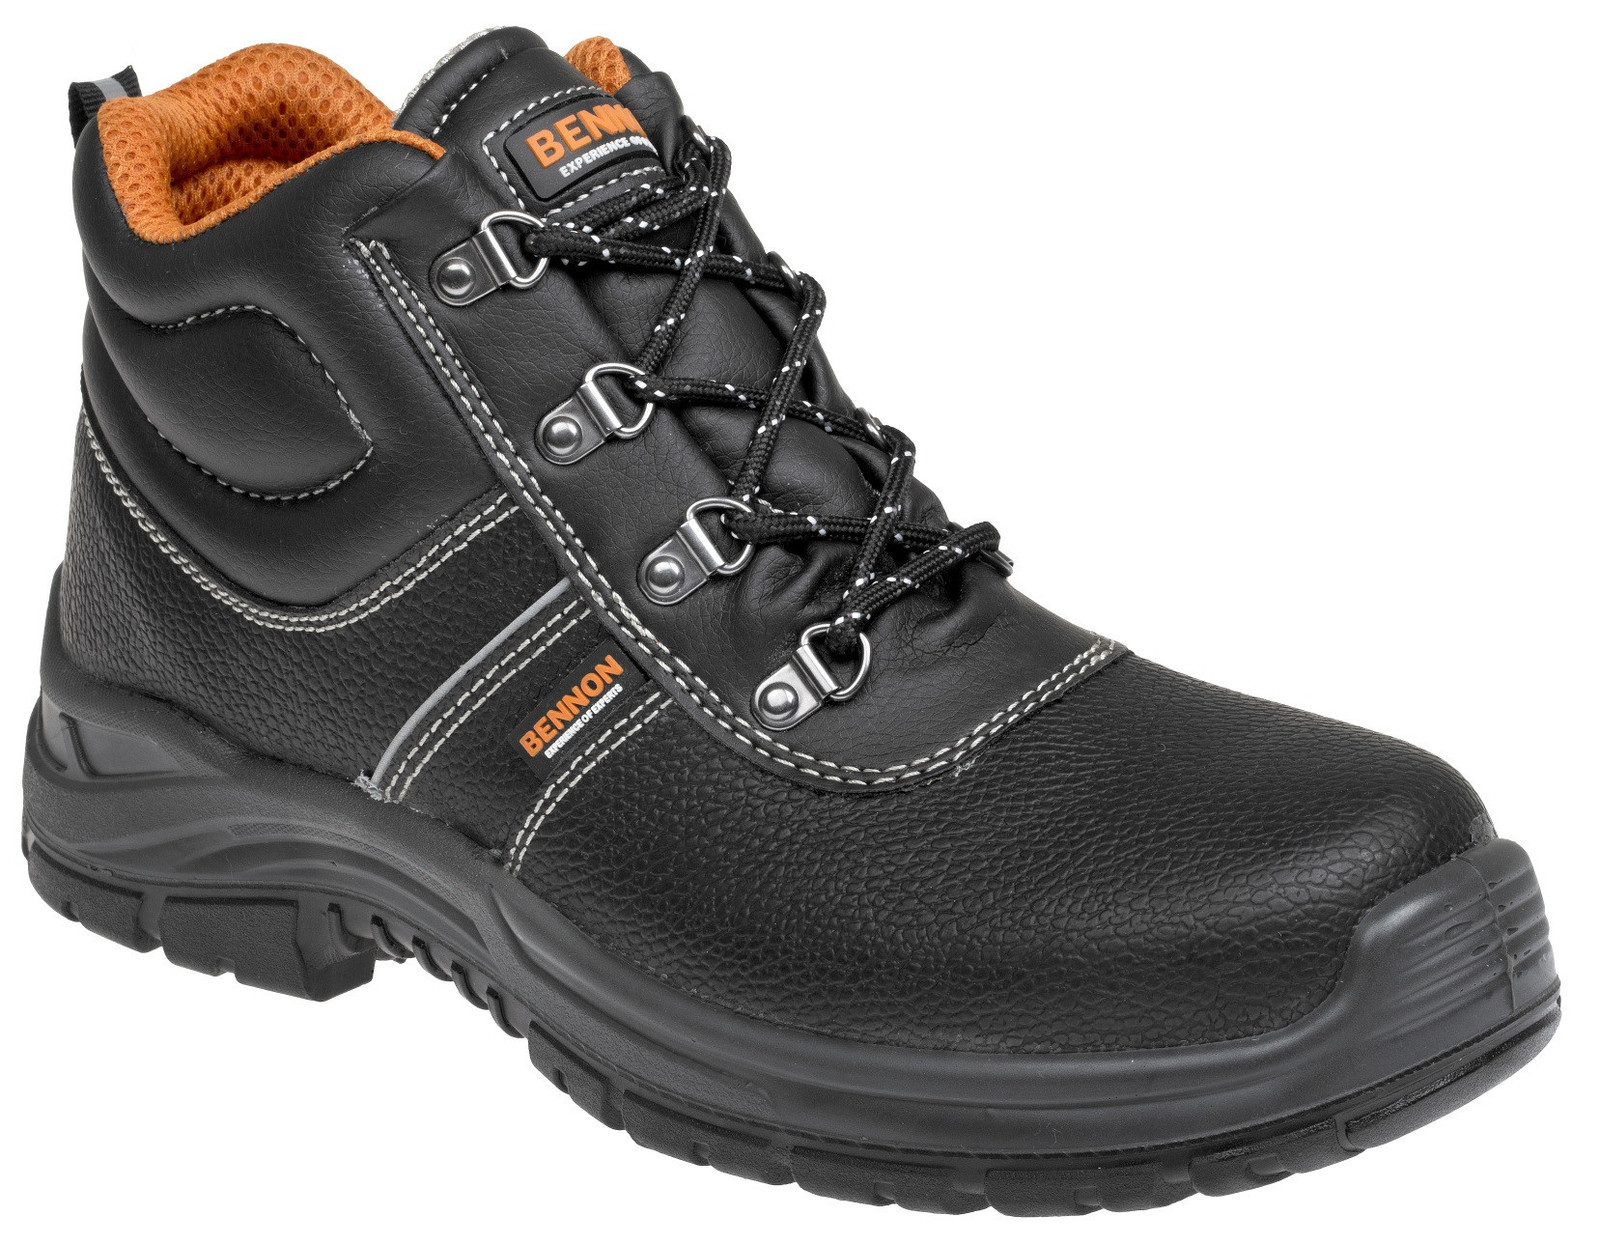 Bezpečnostná obuv Bennon Basic S3 - veľkosť: 42, farba: čierna